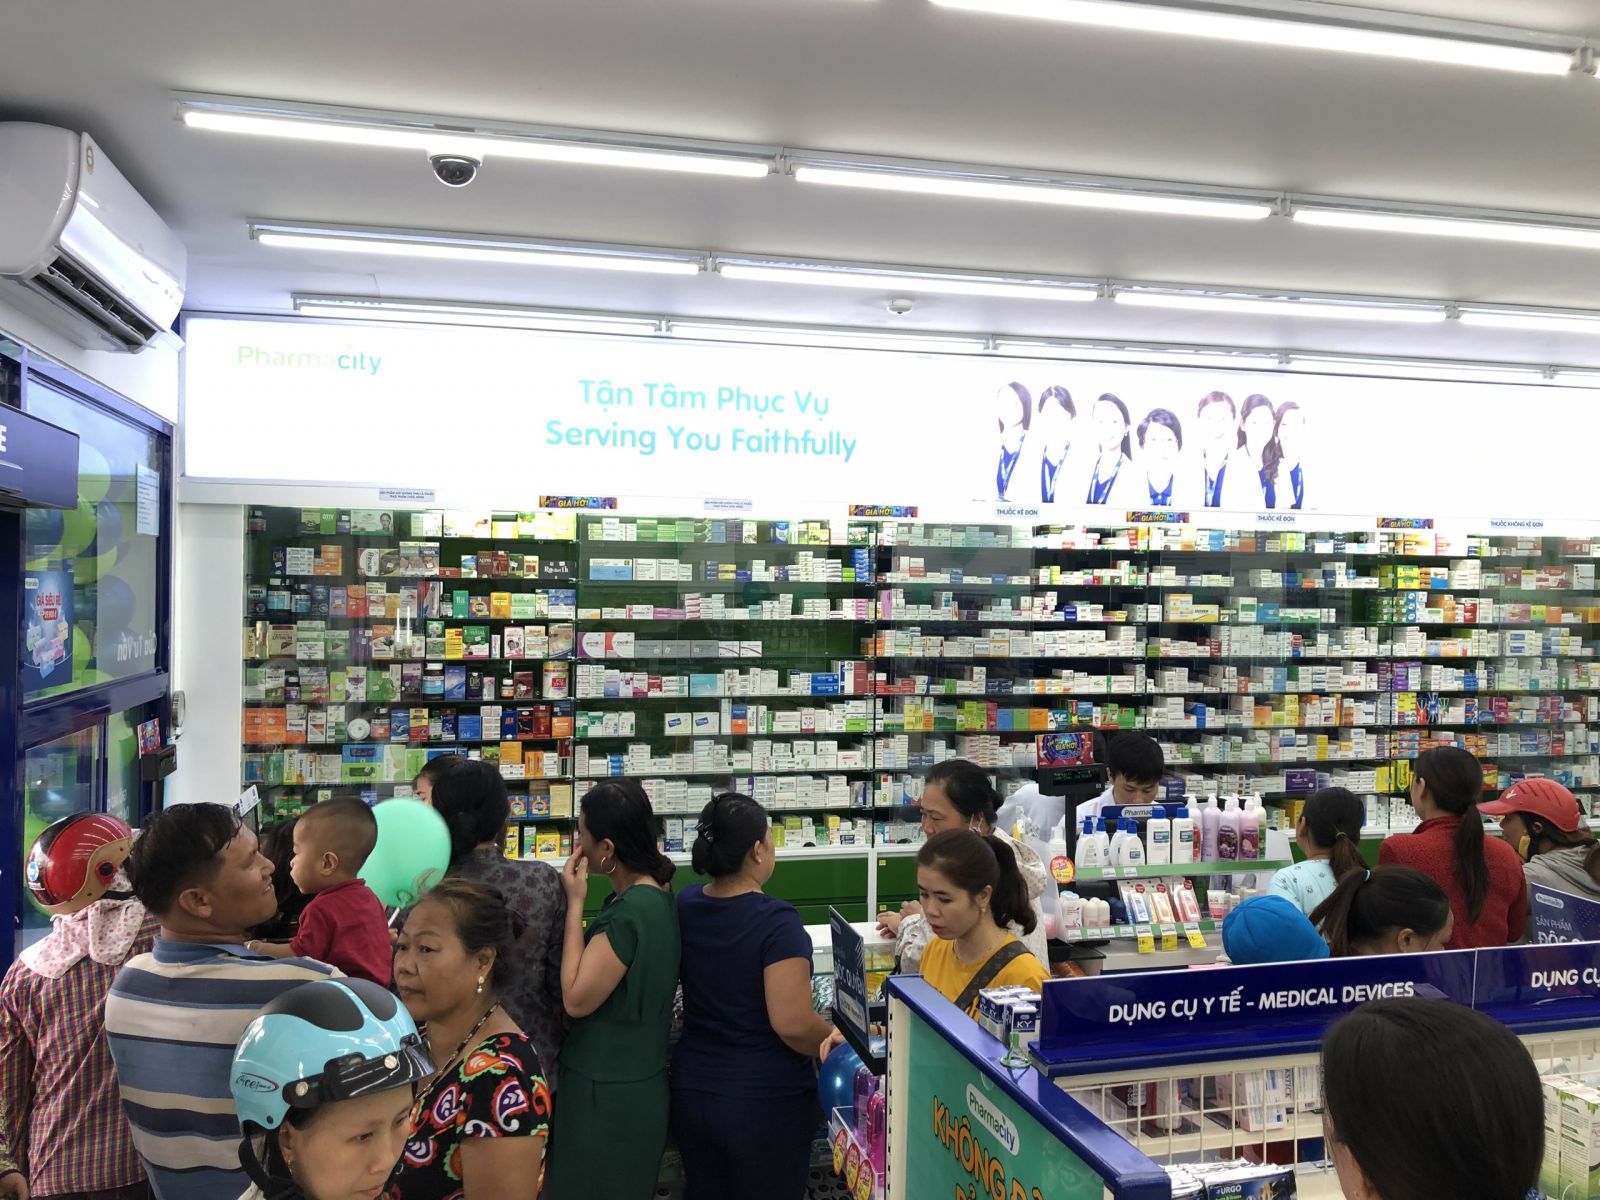 Thi công nội thất đẹp - Hoàn thành nhà thuốc Pharmacity|Diệp Gia